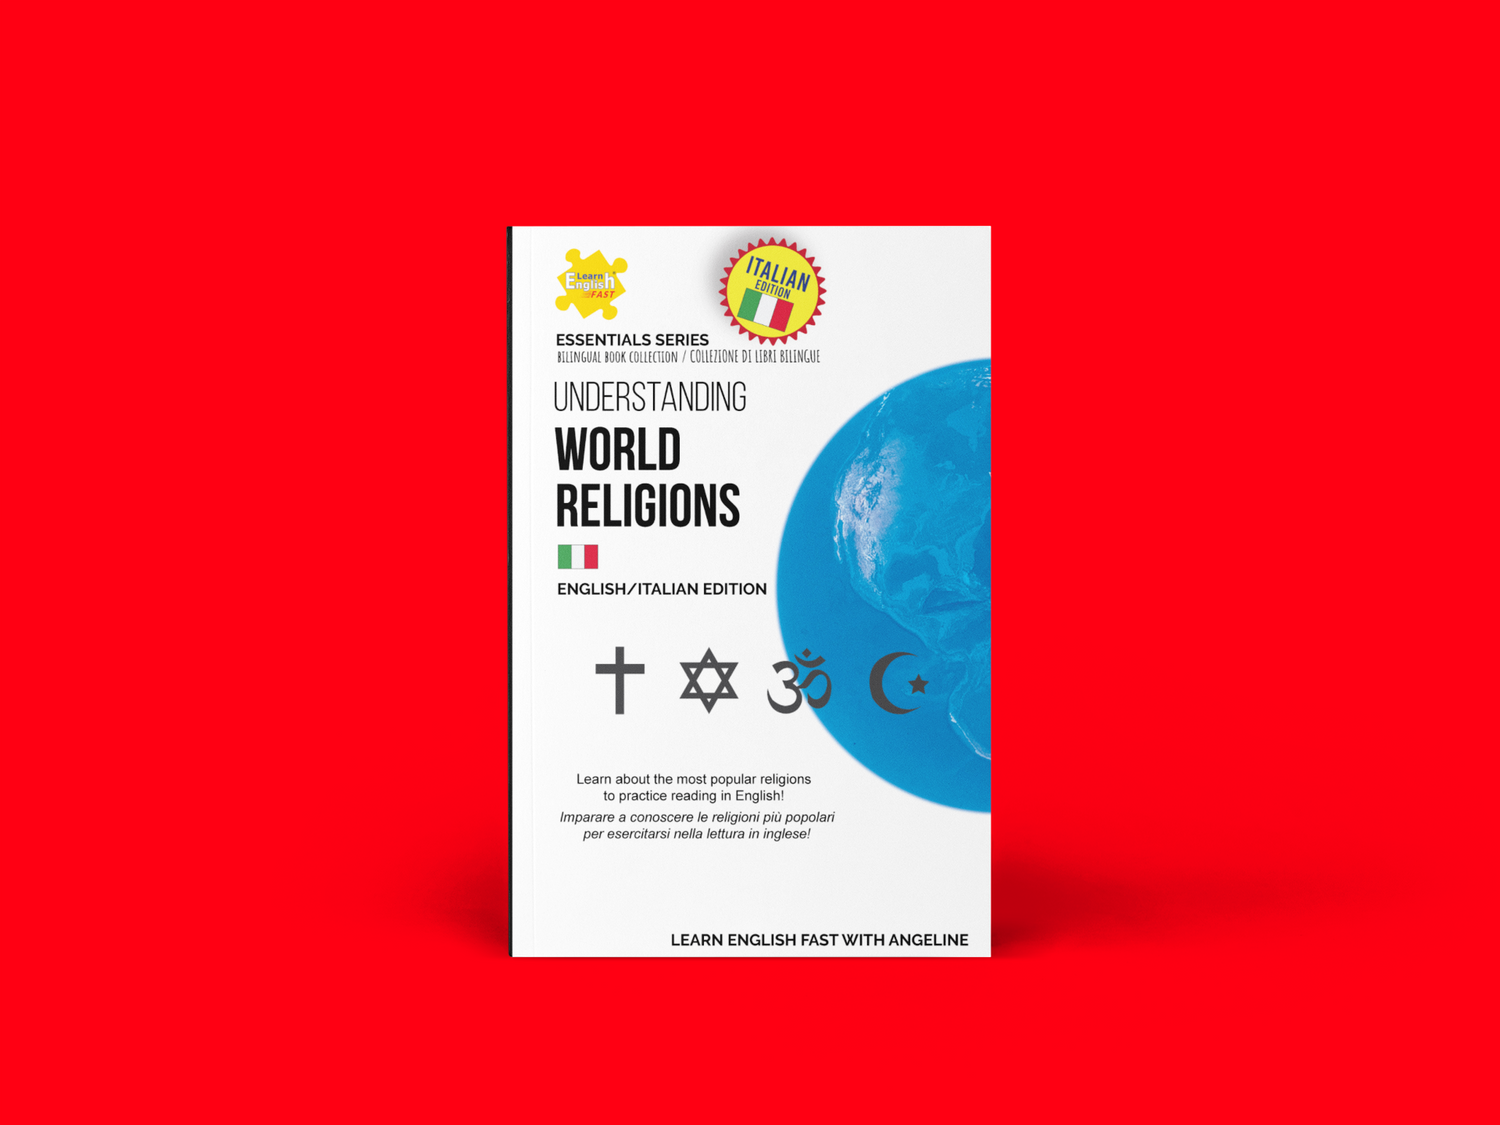 libro bilingue inglese italiano sulle religioni per imparare l'inglese